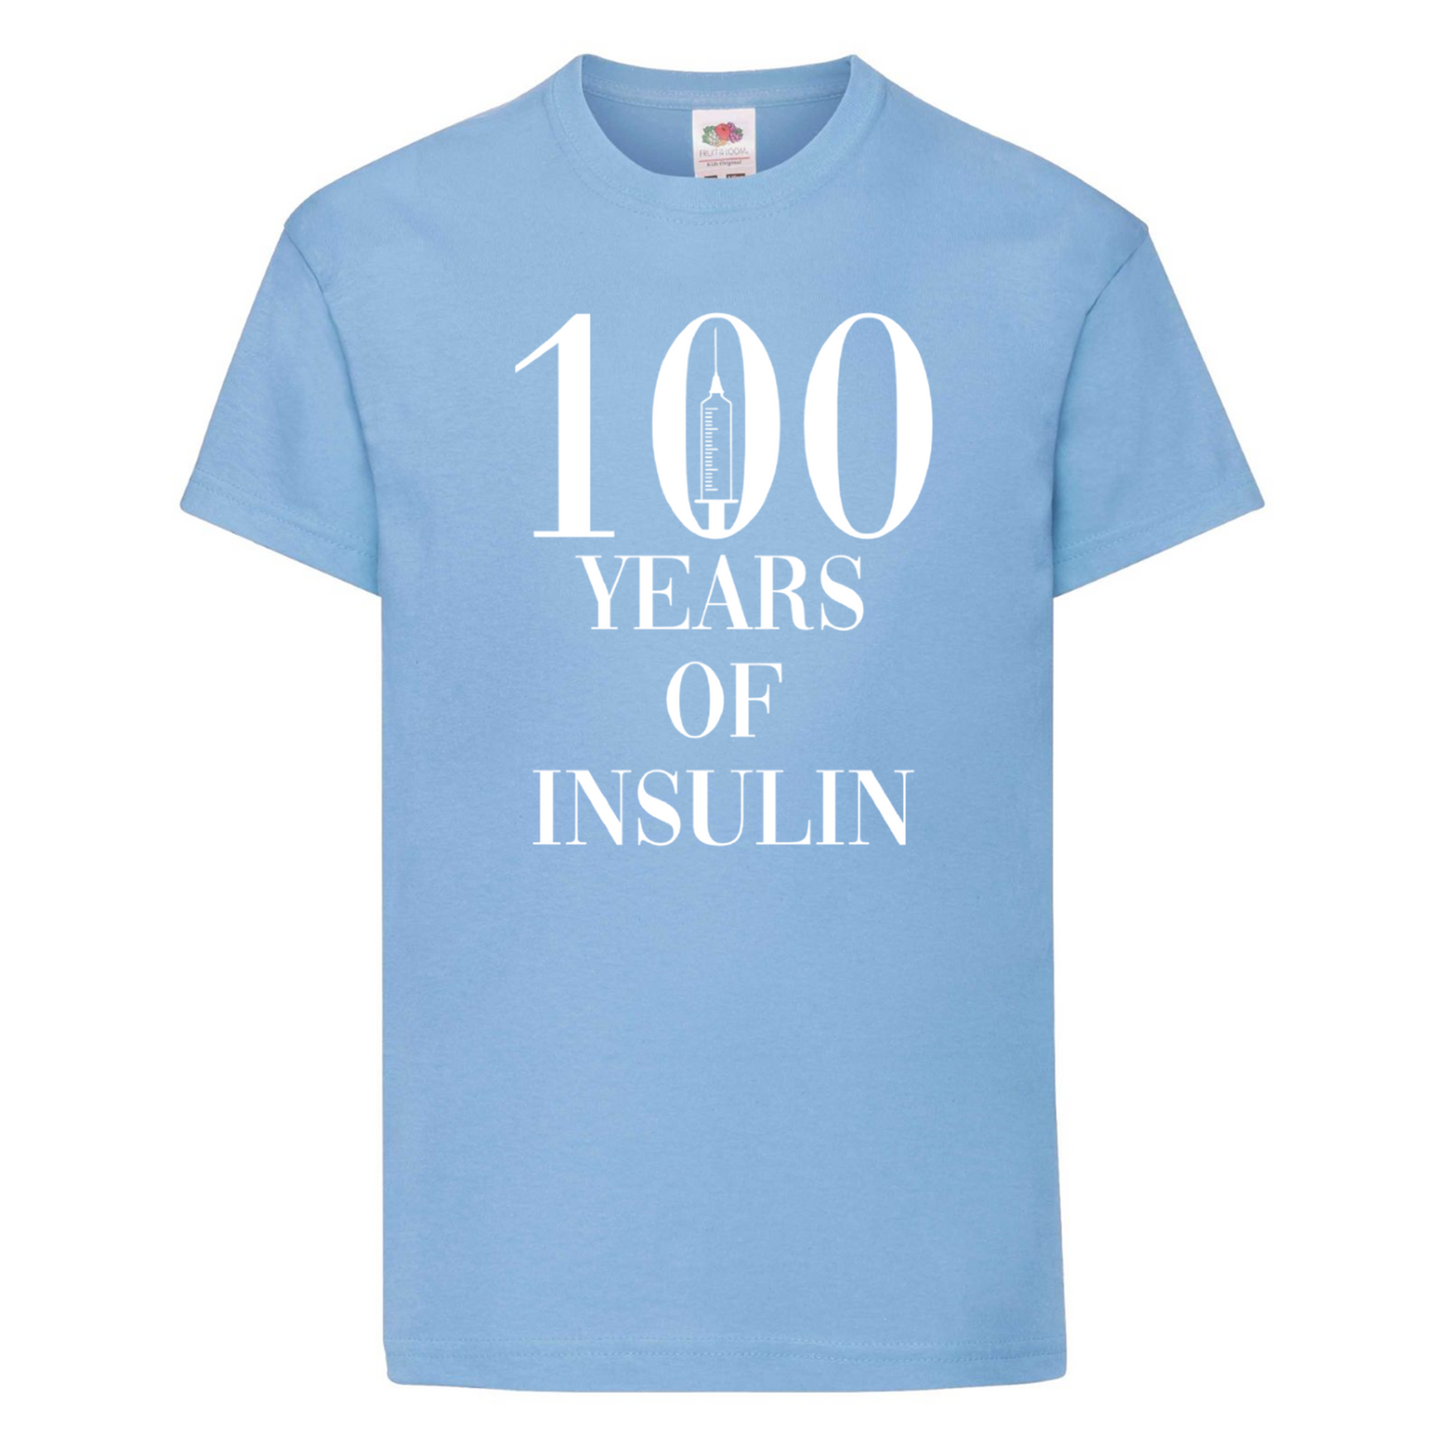 100 Years Of Insulin Kids T Shirt